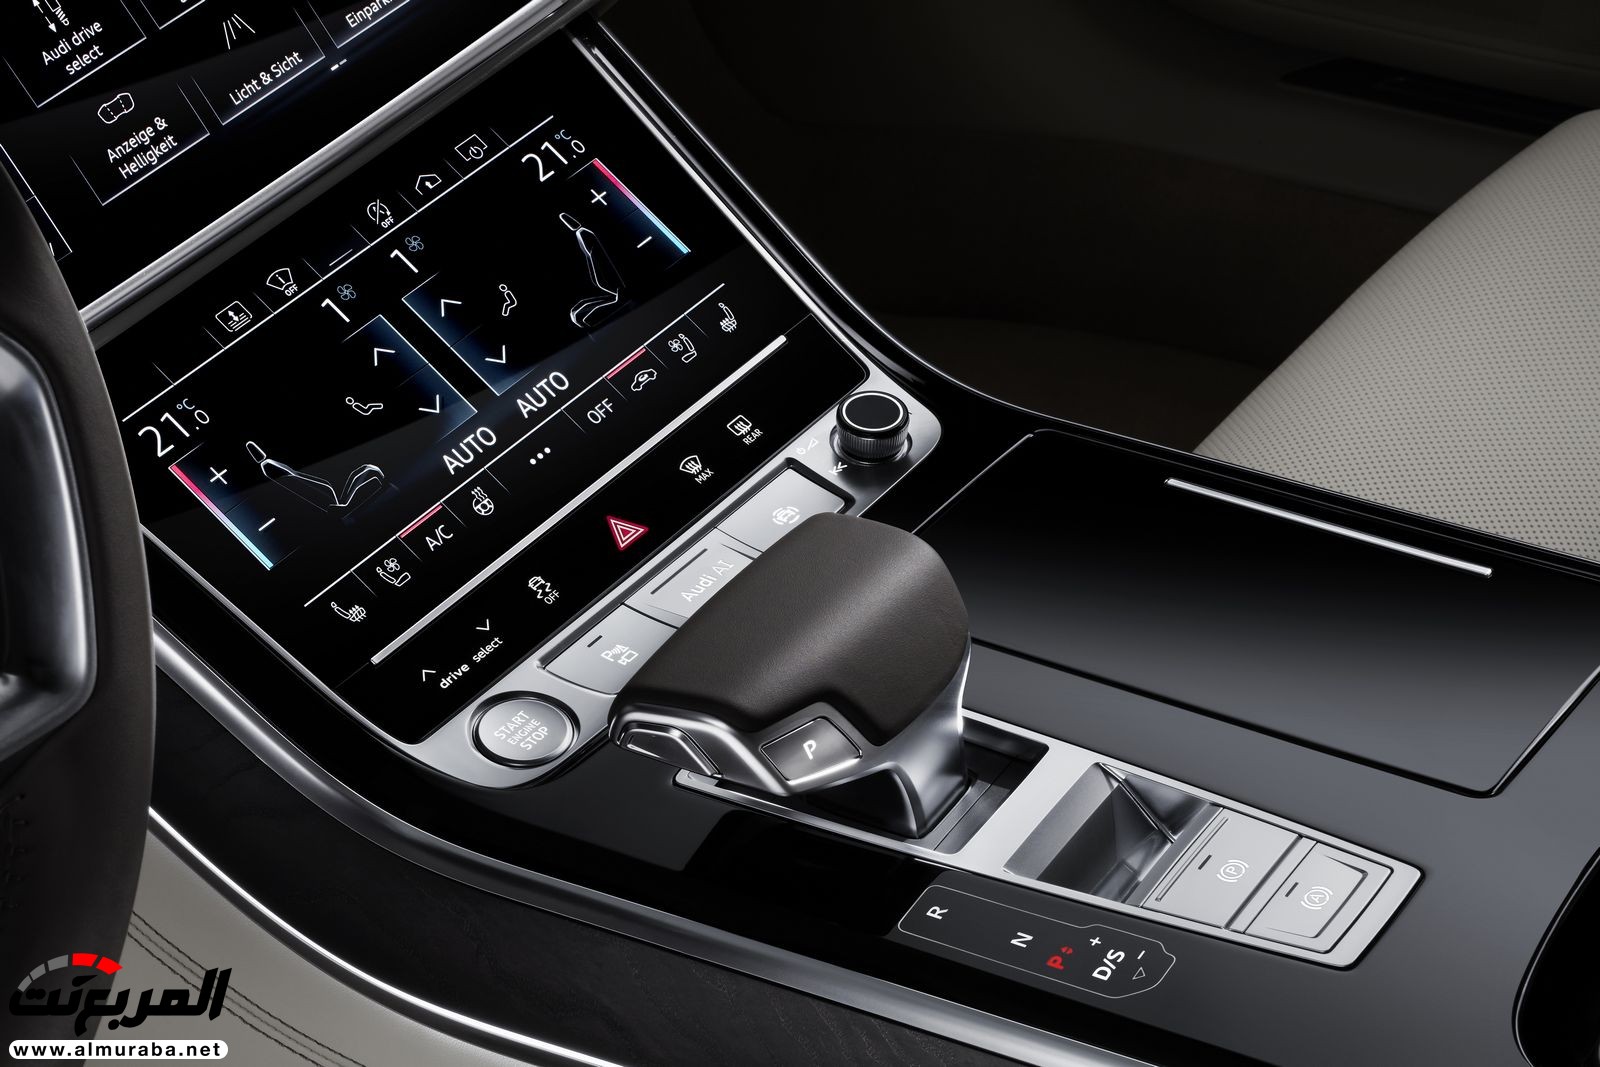 أودي A8 2018 الجديدة كلياً تكشف نفسها بتصميم وتقنيات متطورة "معلومات + 100 صورة" Audi A8 42